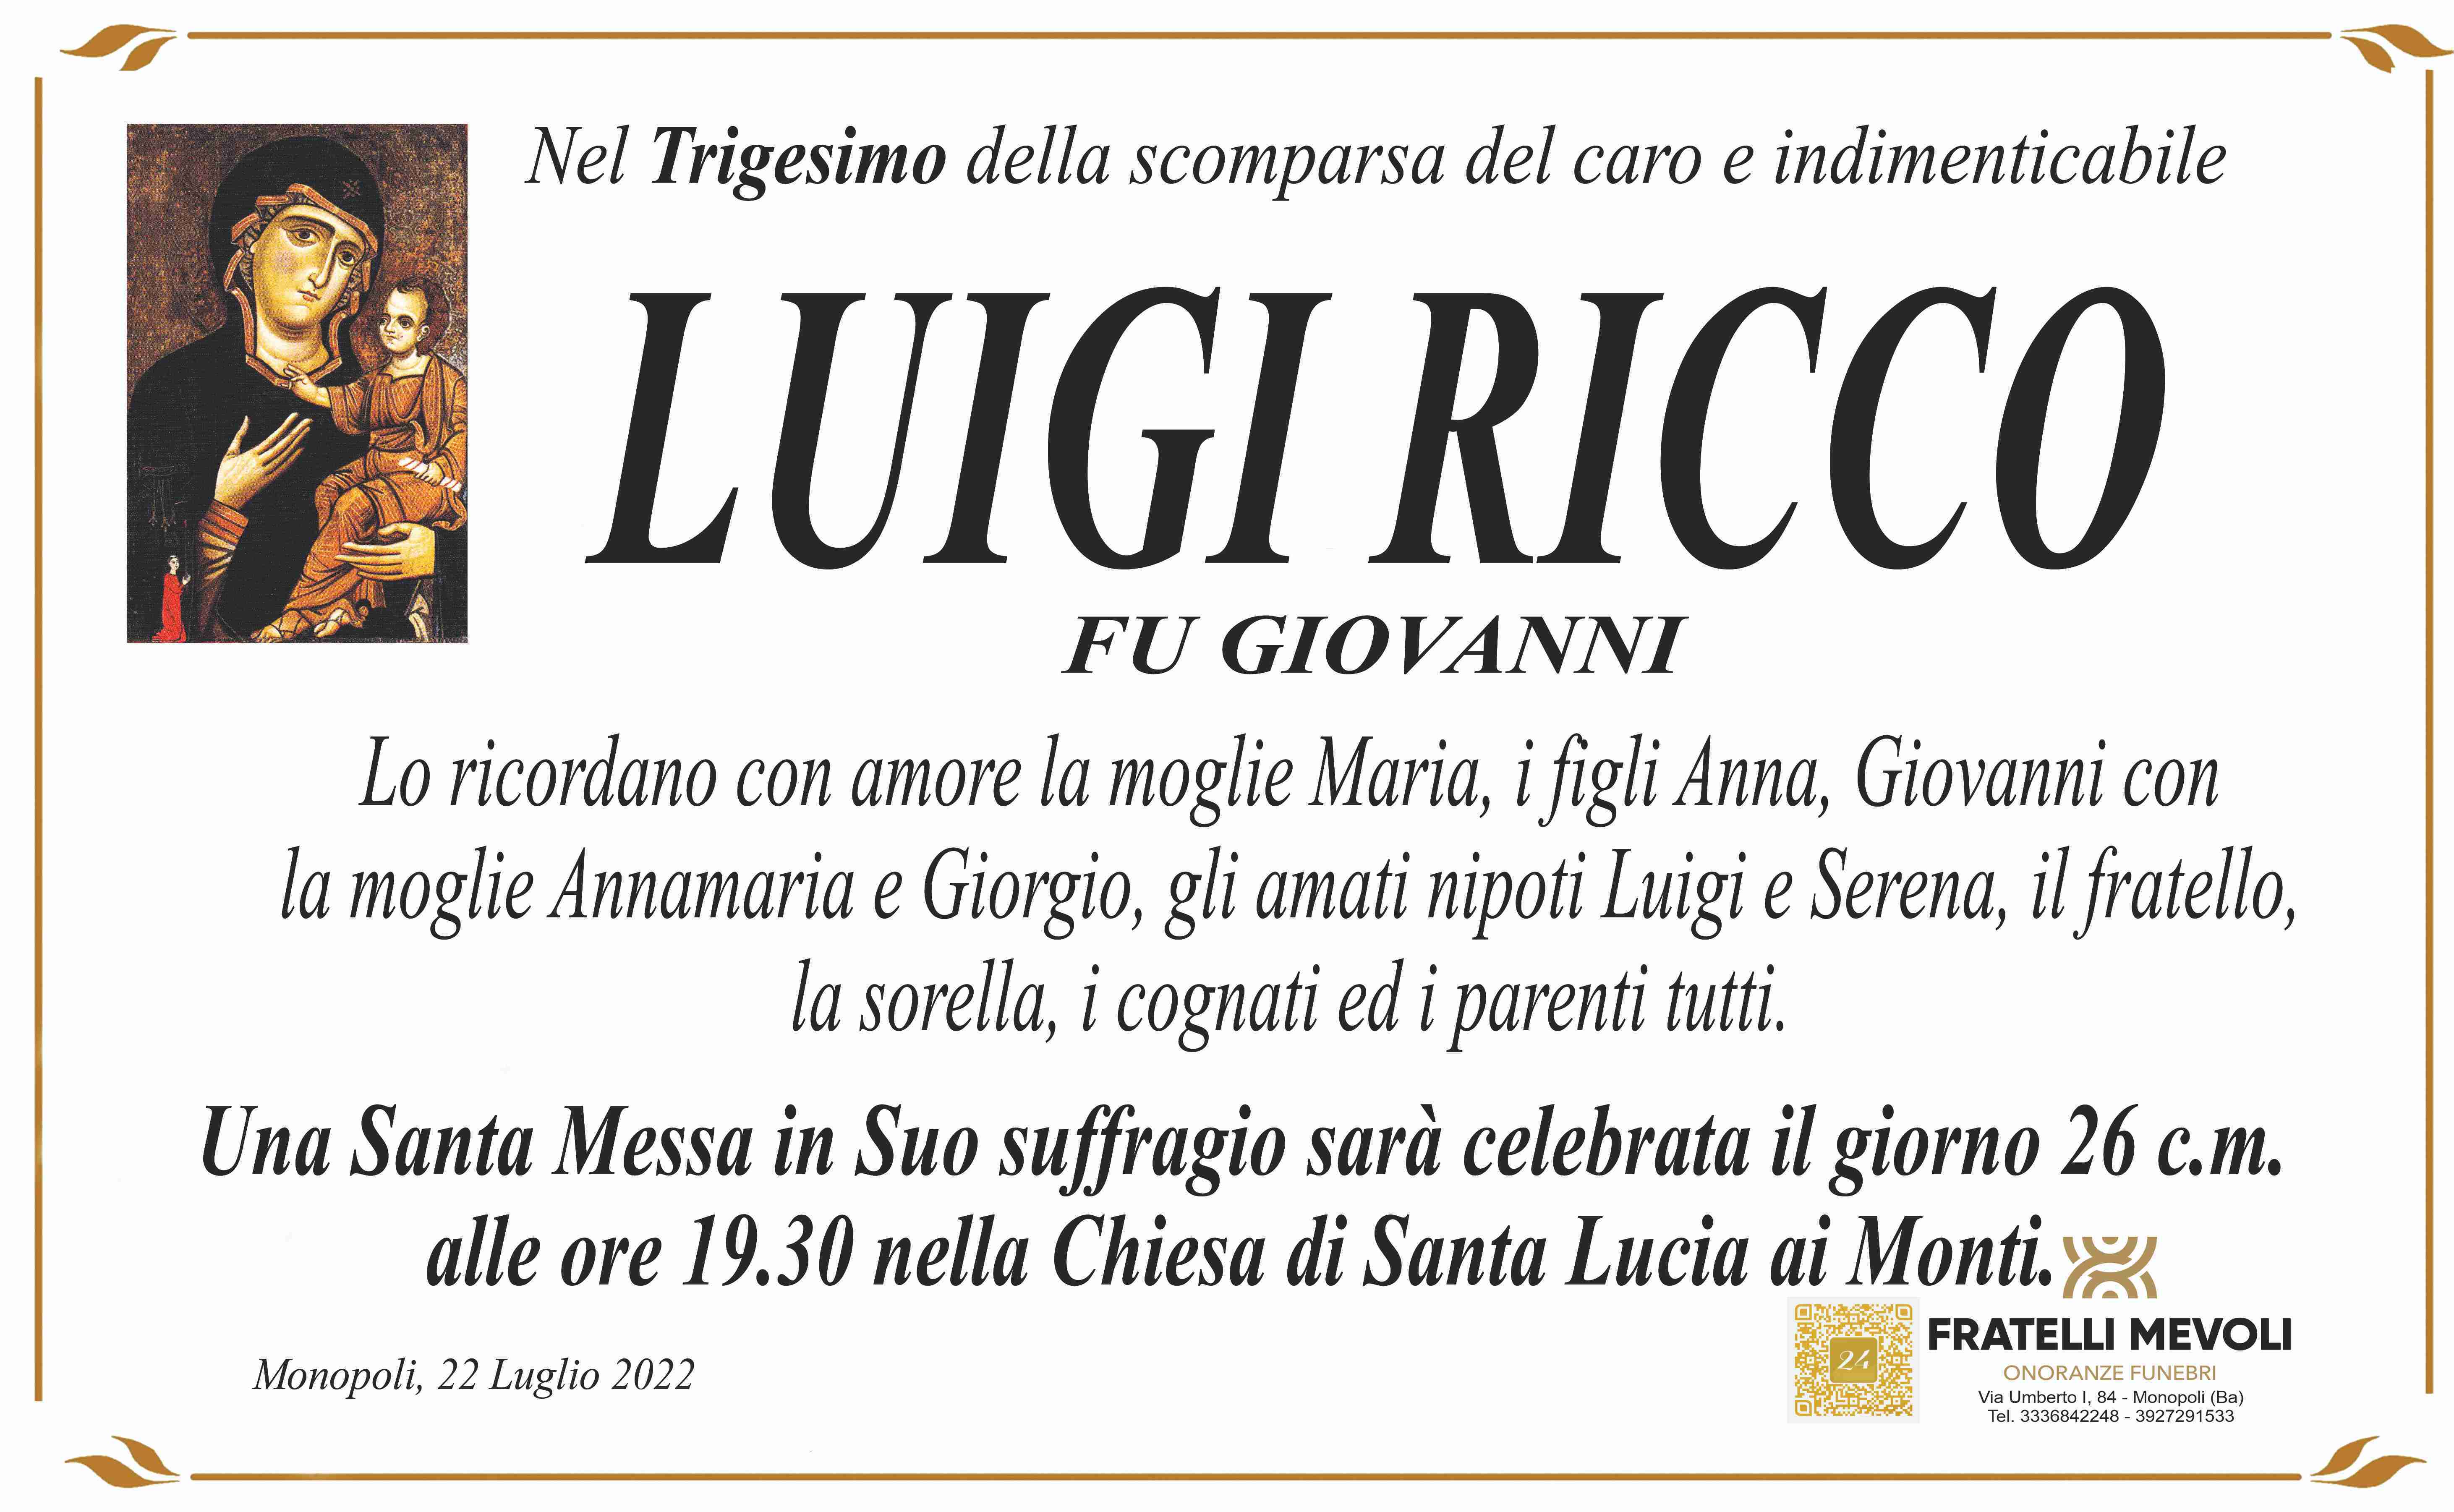 Luigi Ricco